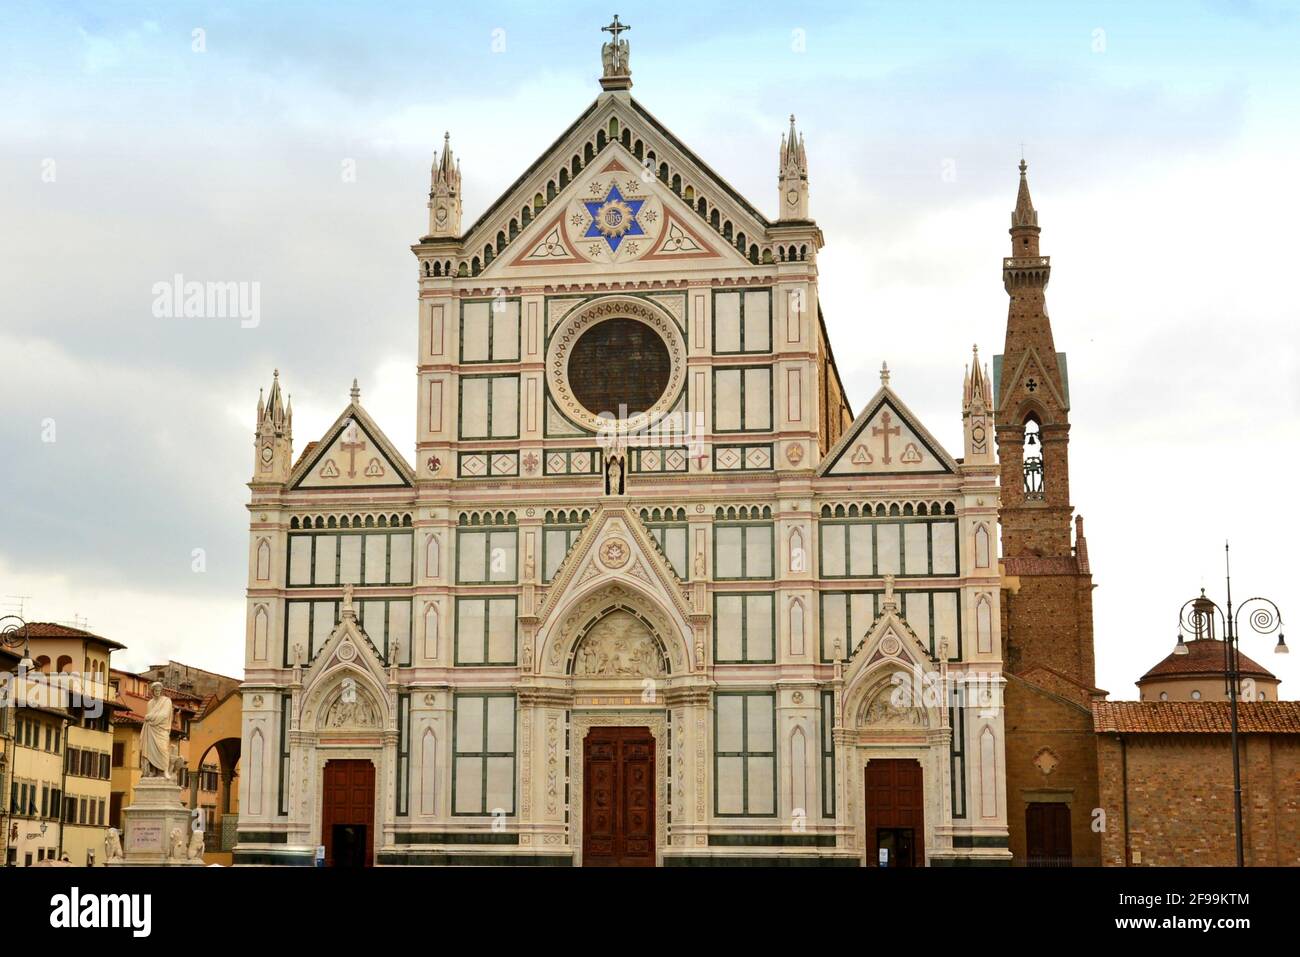 Italia, Firenze, la chiesa di Santa Croce è una basilica costruita nel XIII secolo, è la più grande chiesa francescana del mondo. Foto Stock